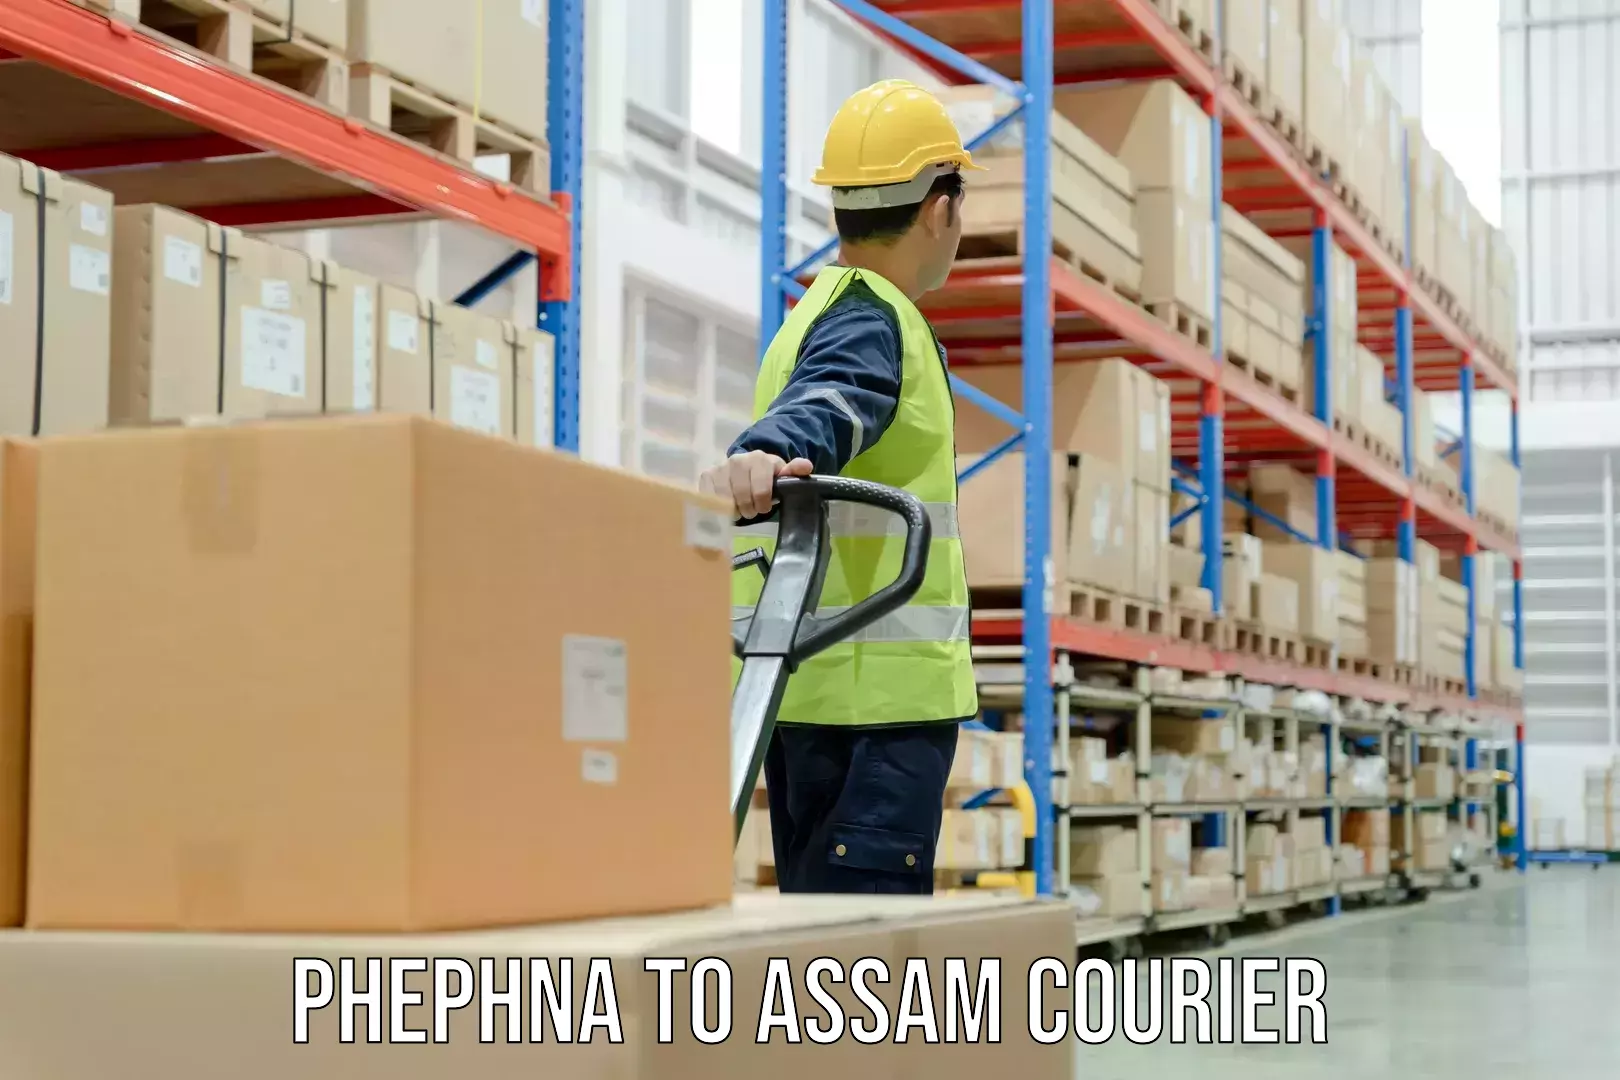 Efficient parcel service Phephna to Gohpur